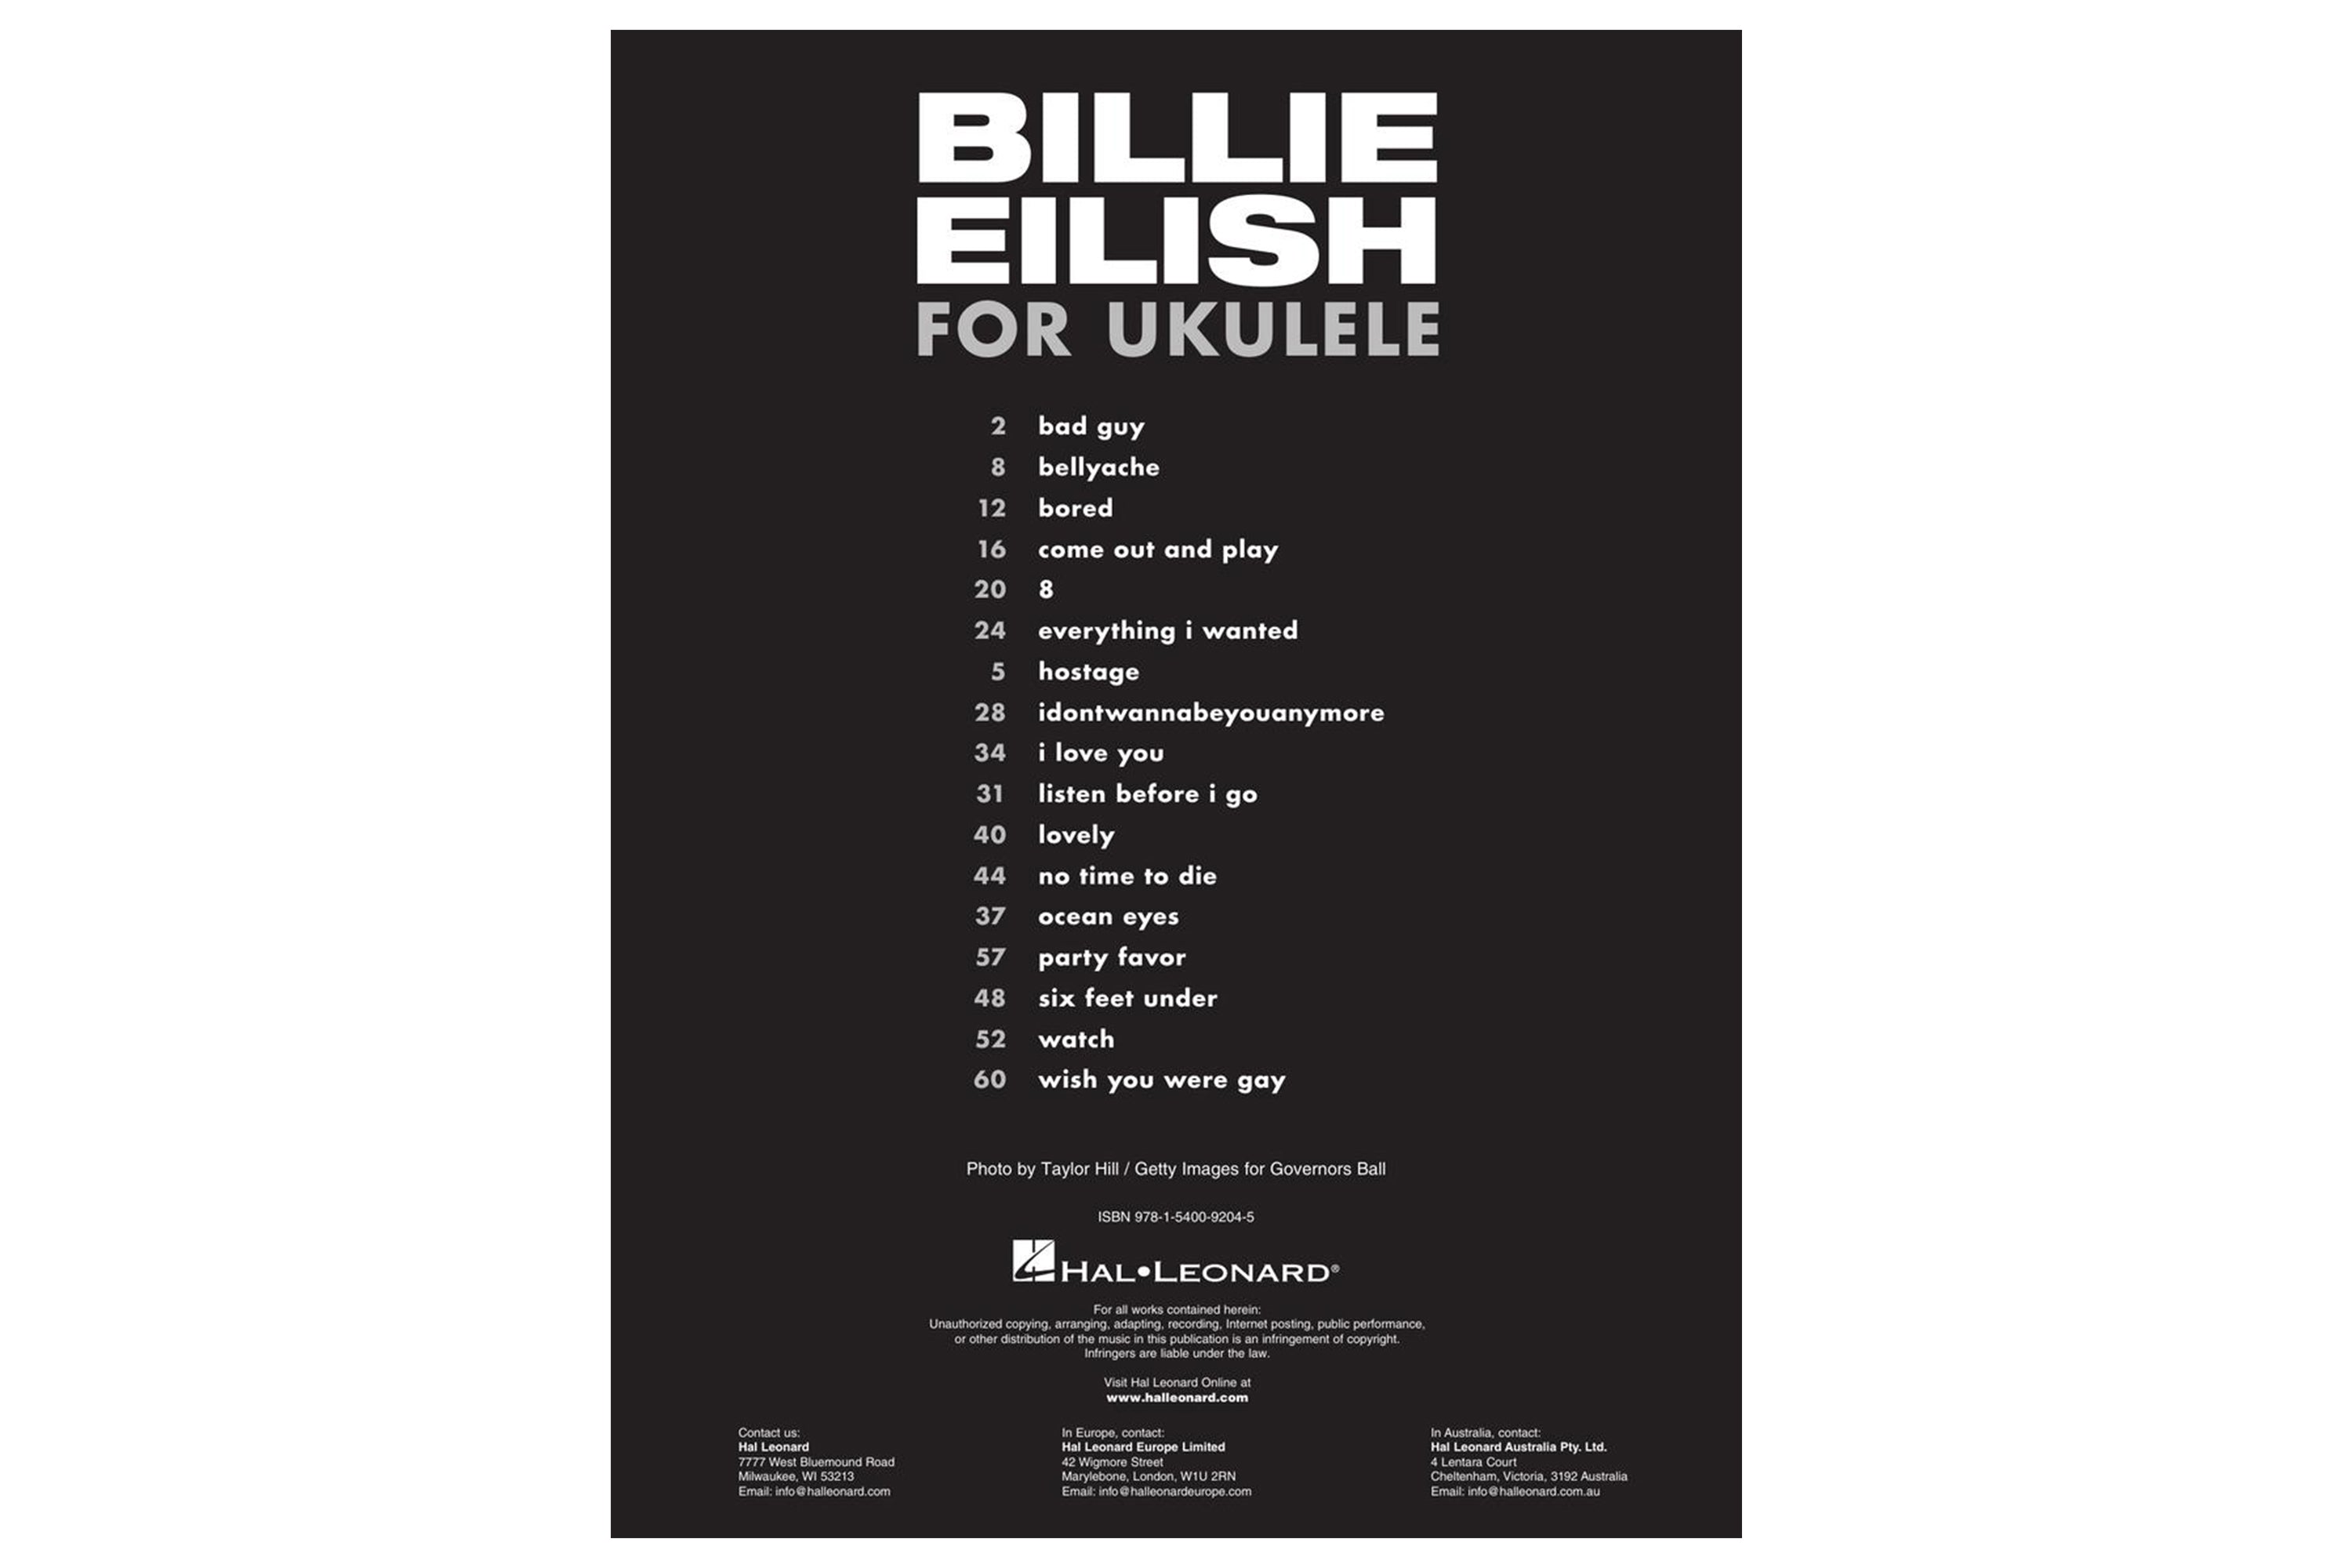 Billie Eilish For Ukulele 17 Songs to Strum & Sing